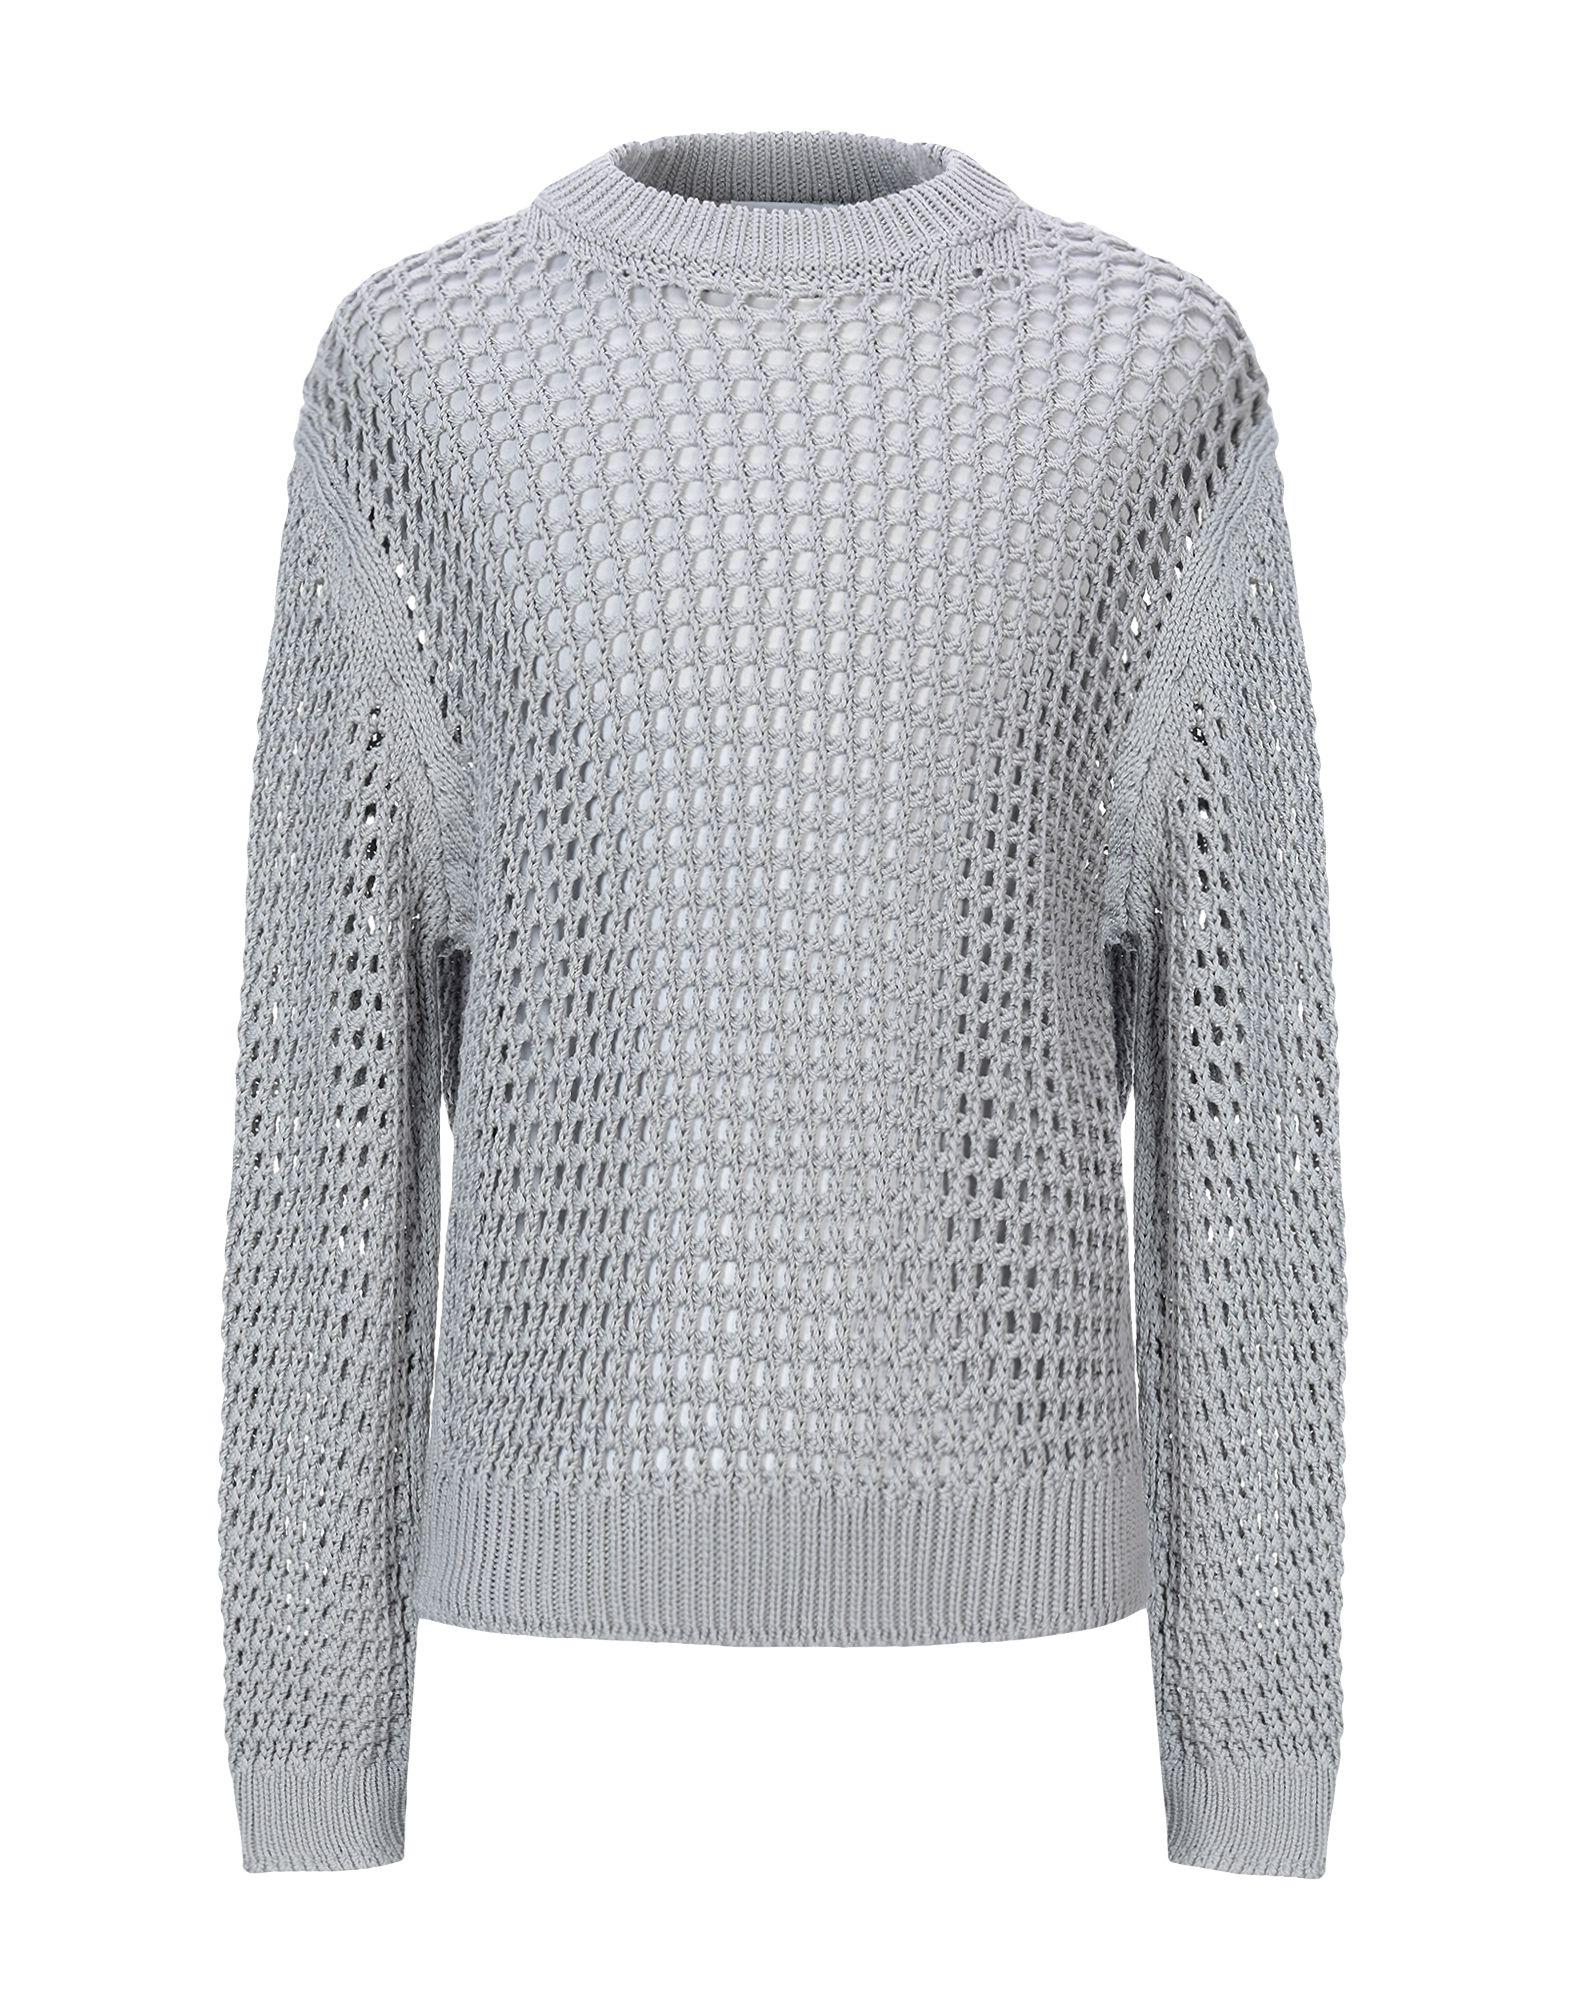 Jil Sander Sweater in Grey (Gray) for Men - Lyst